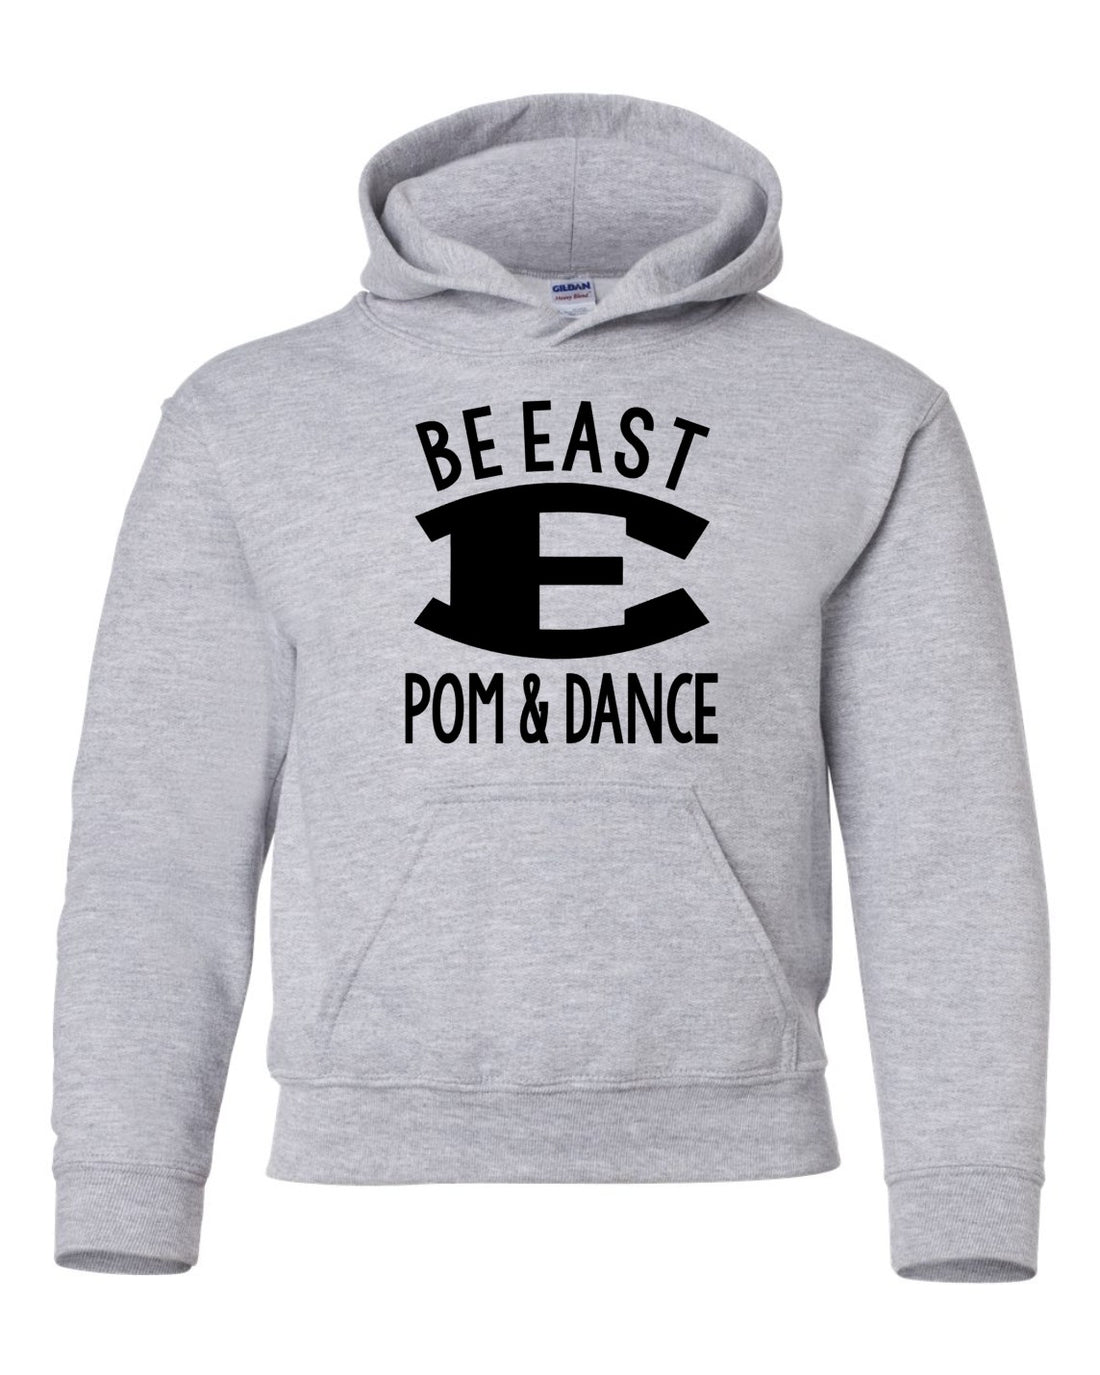 Be East Pom & Dance Hoodie